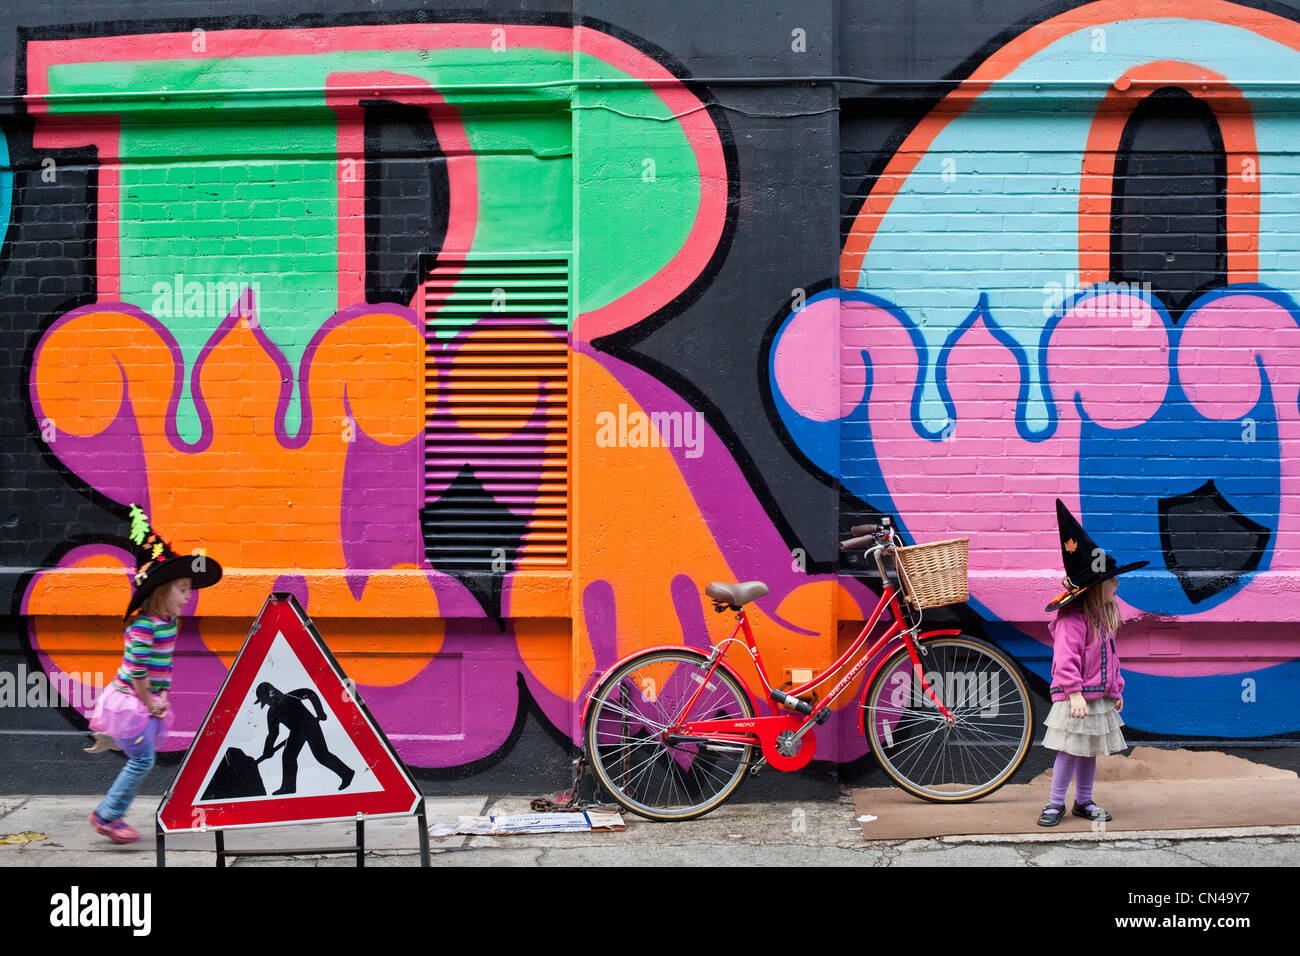 Reino Unido, Londres, Hackney, Shoreditch, graffiti de l'artiste anglais Eine (de son vrai nom : Ben Flynn), de la cual el primer Foto de stock